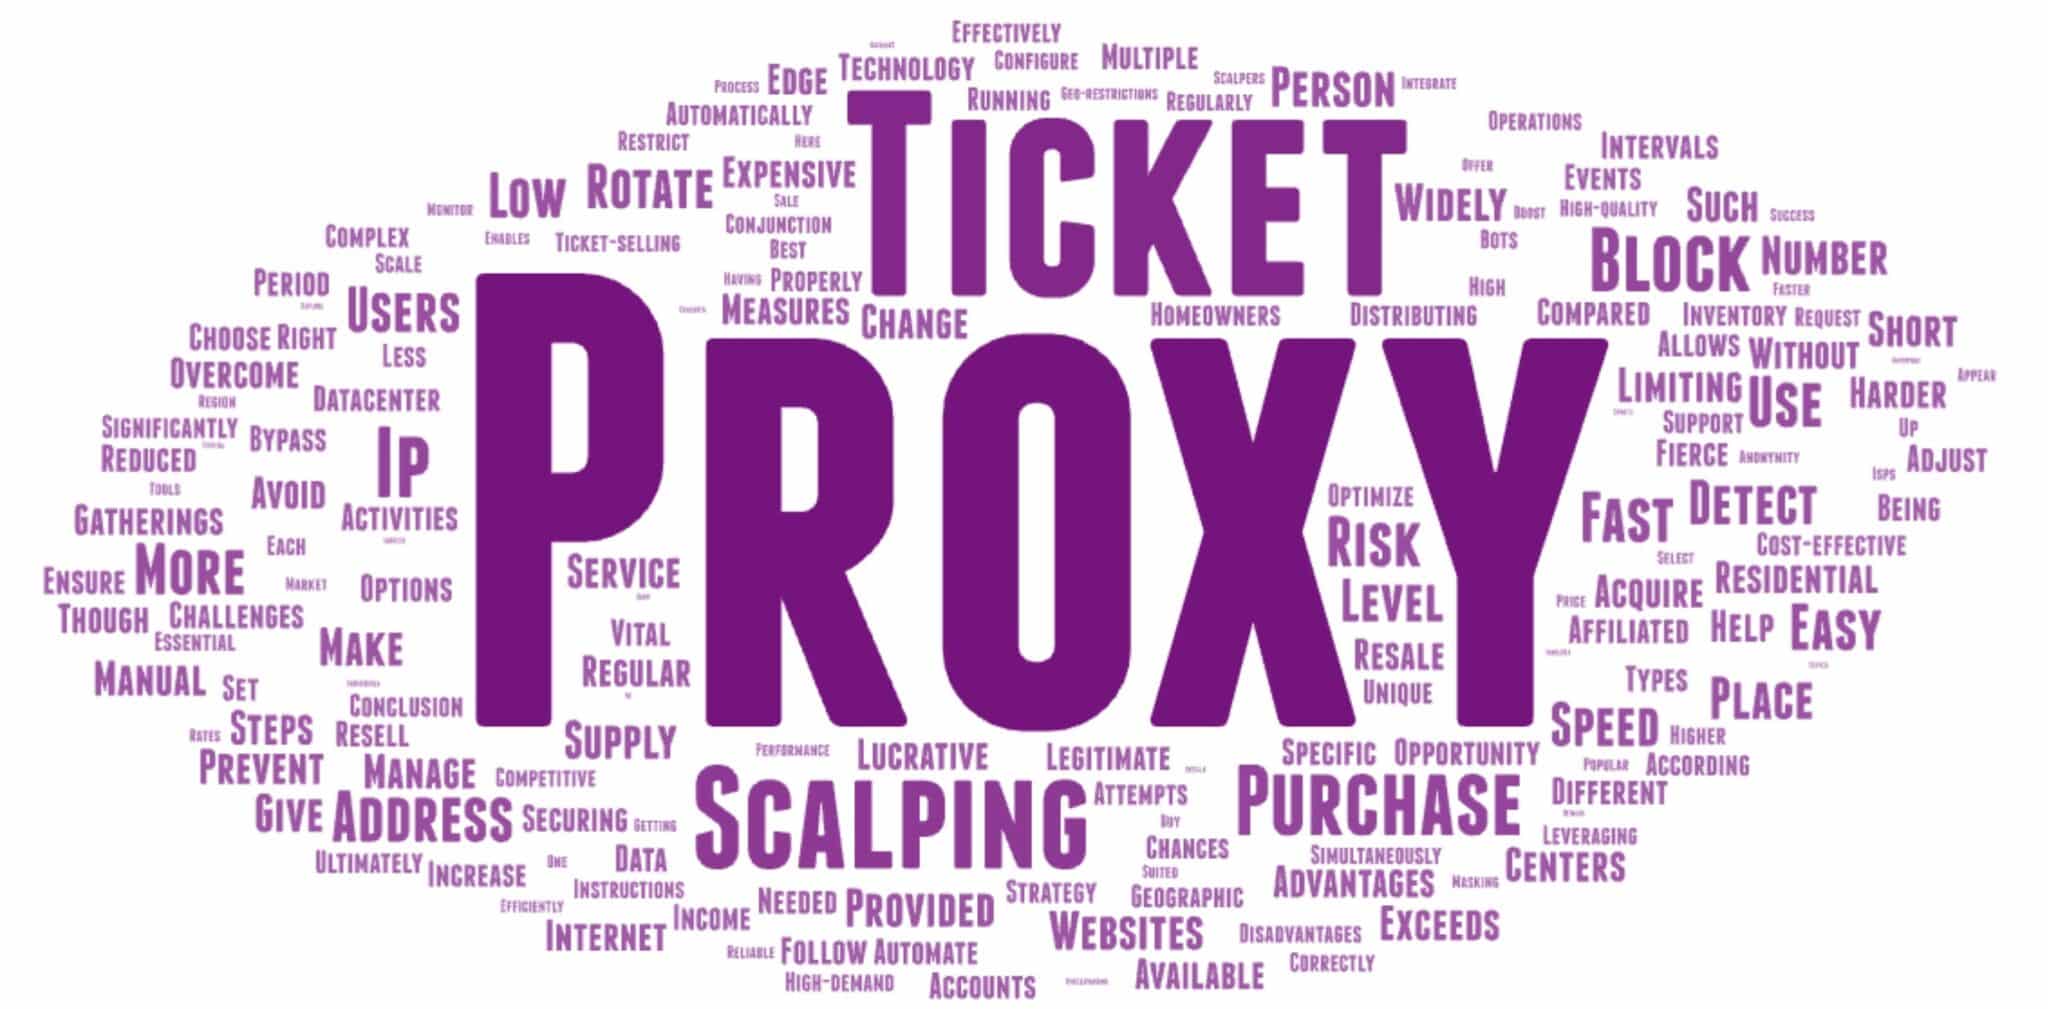 Loại proxy nào phù hợp nhất cho việc mở rộng quy mô vé và điều này có thể tăng thu nhập của bạn như thế nào?